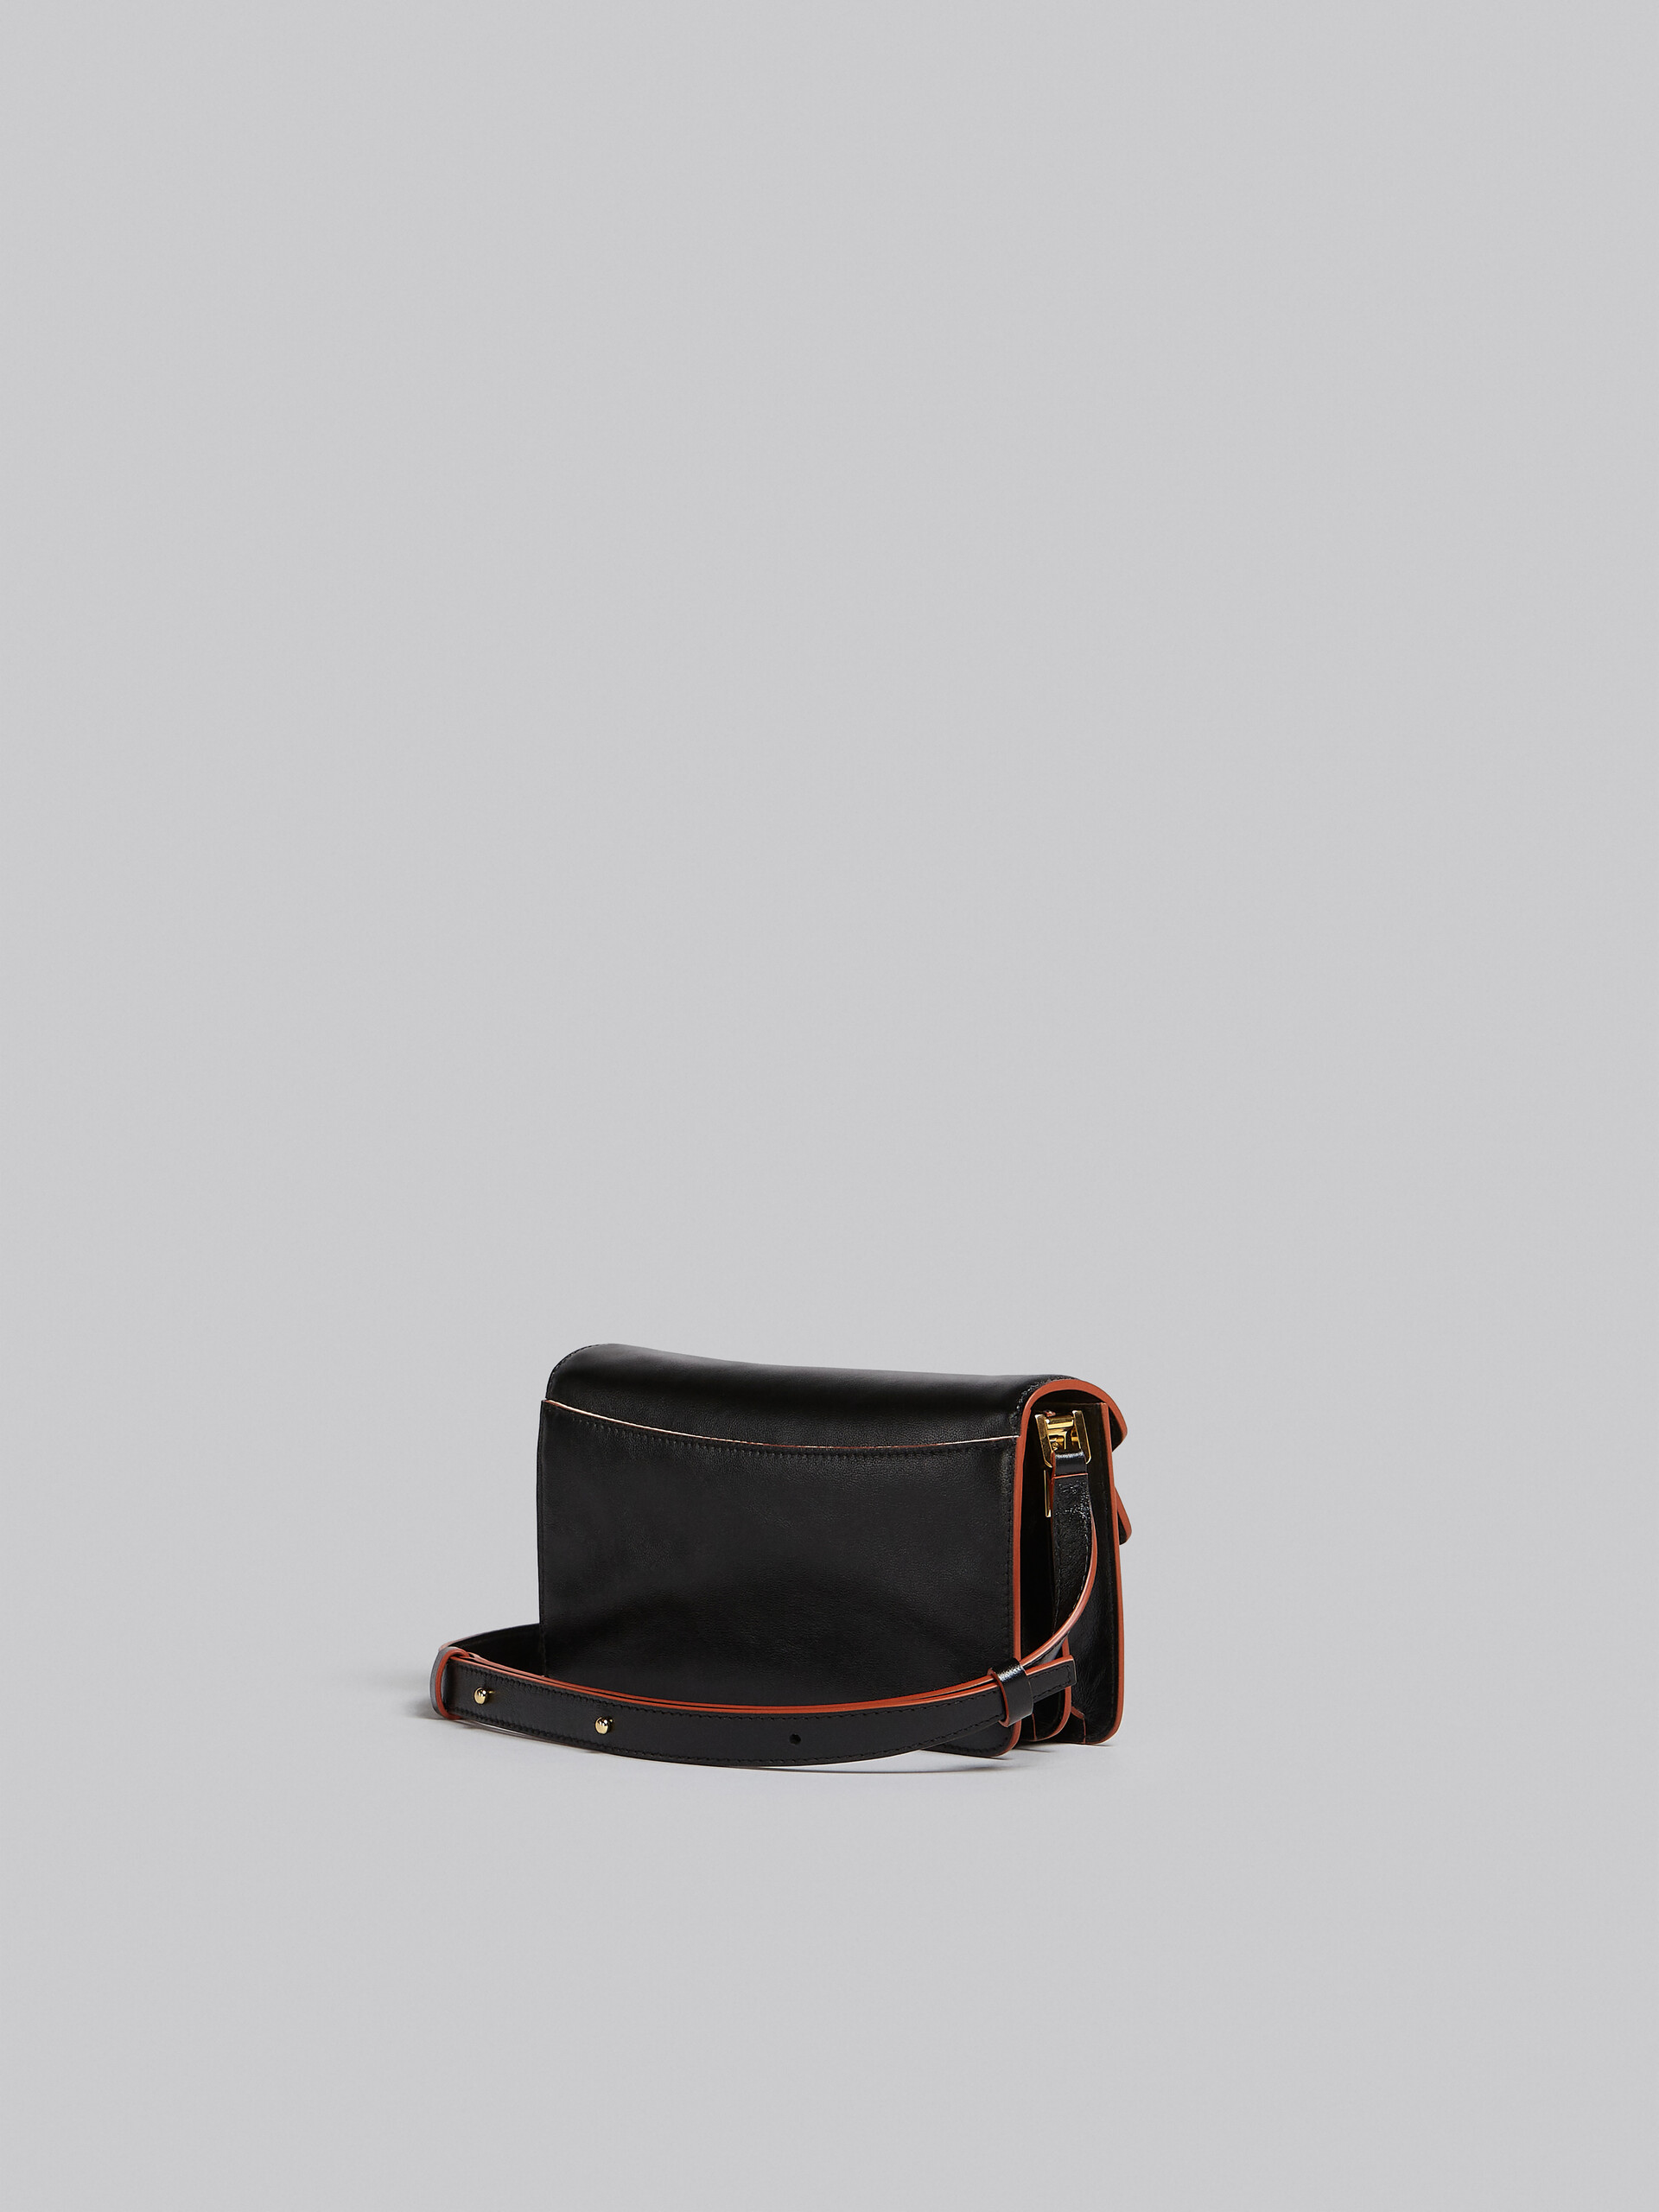 Sac Trunk Soft horizontal en cuir noir - Sacs portés épaule - Image 3